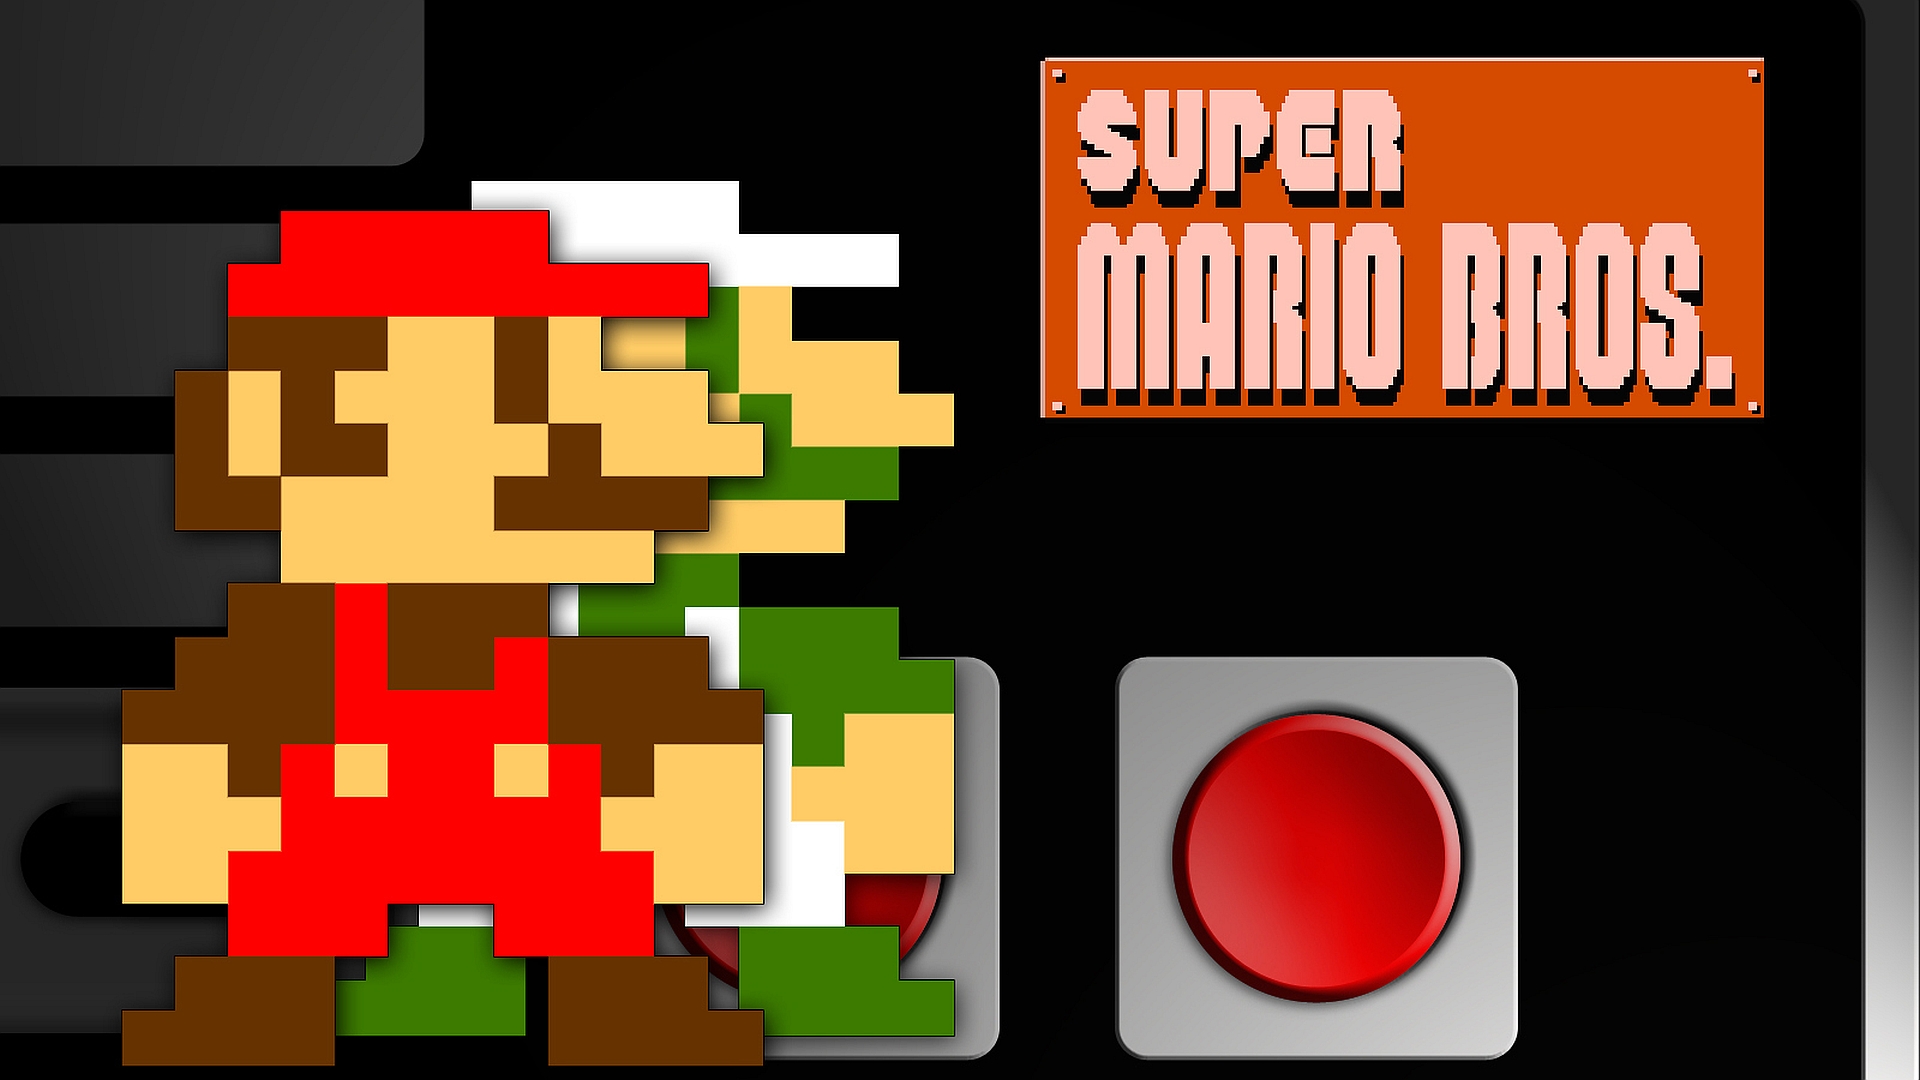 Mario bros snes. Игры super Mario Bros Нинтендо. Марио Нинтендо 8 бит. Super Mario Bros игра 8 бит. Nintendo NES Марио.